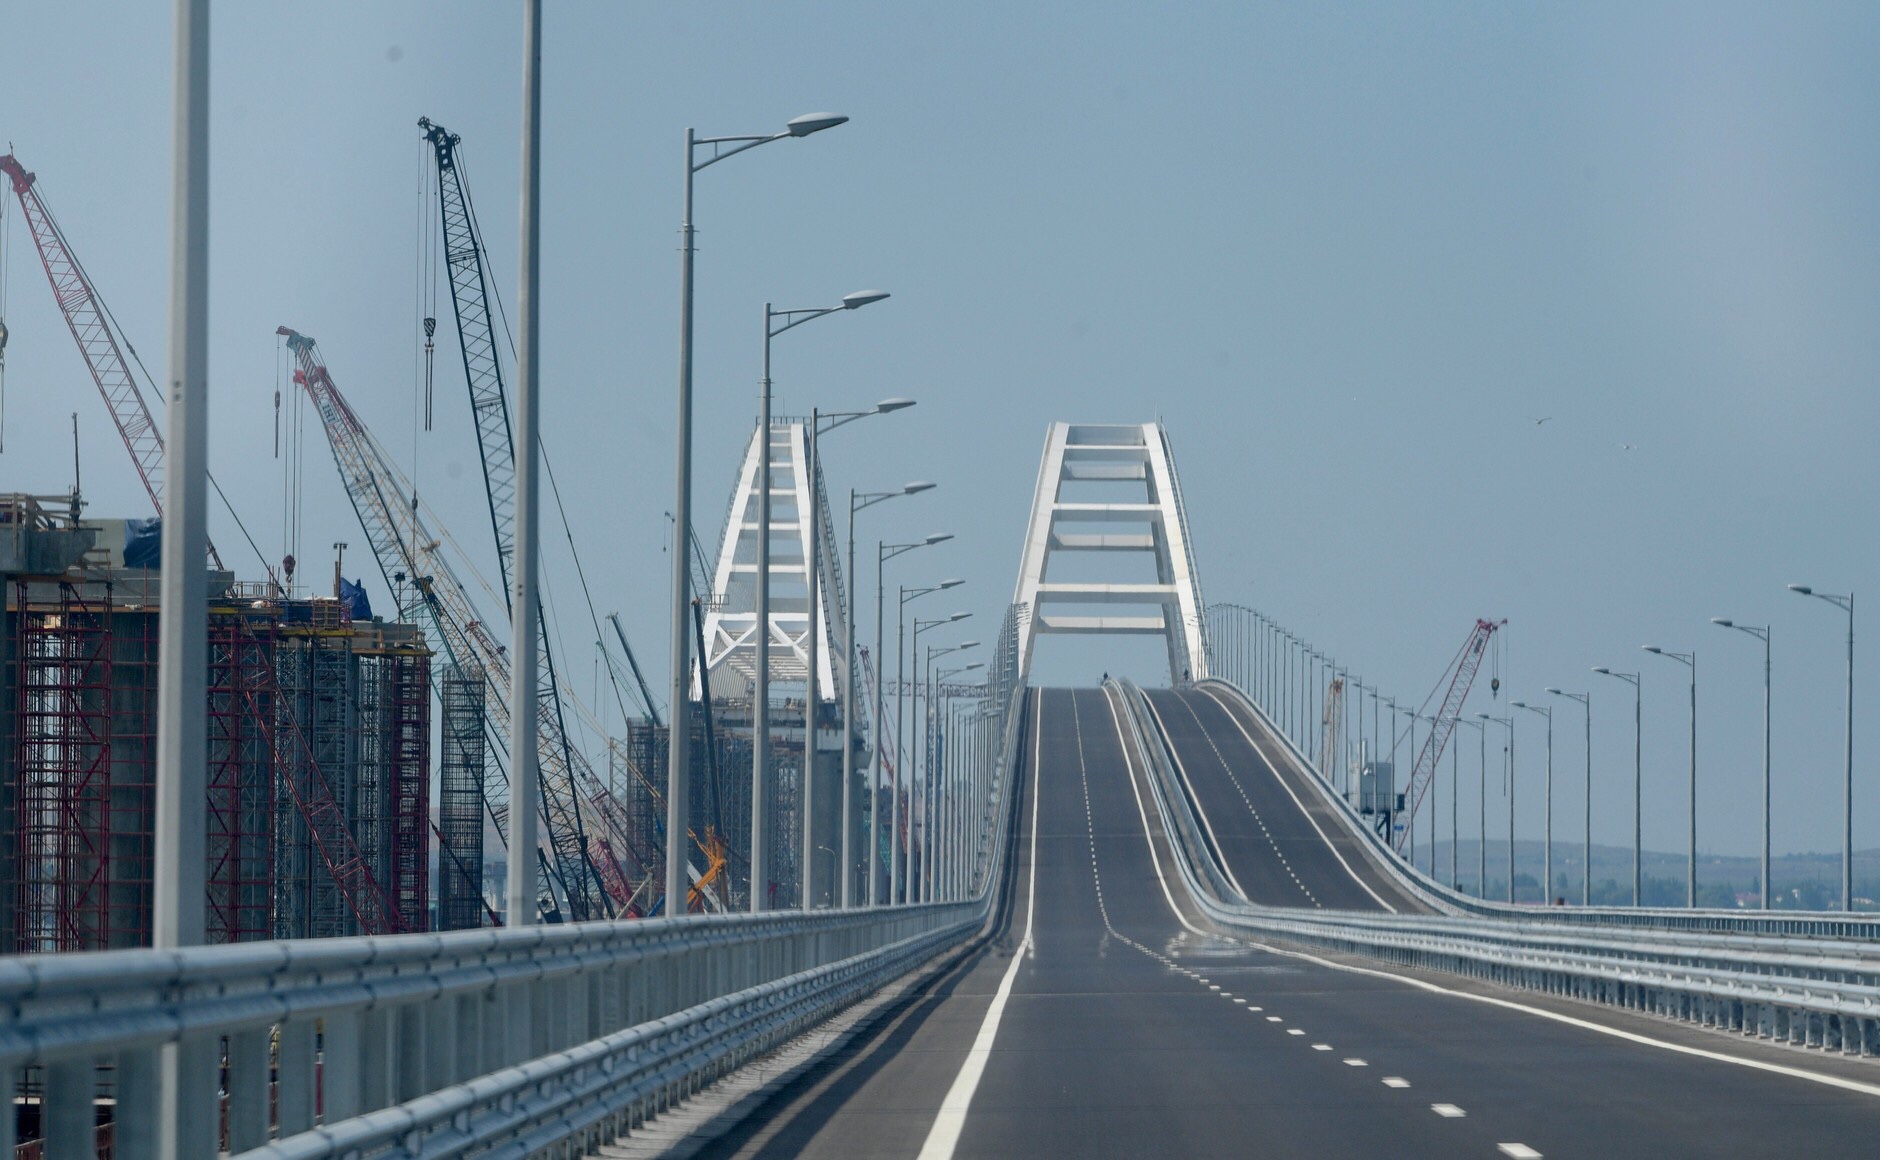 Russian-Crimean Bridge Completion Escalates Ukraine-Russia Tensions